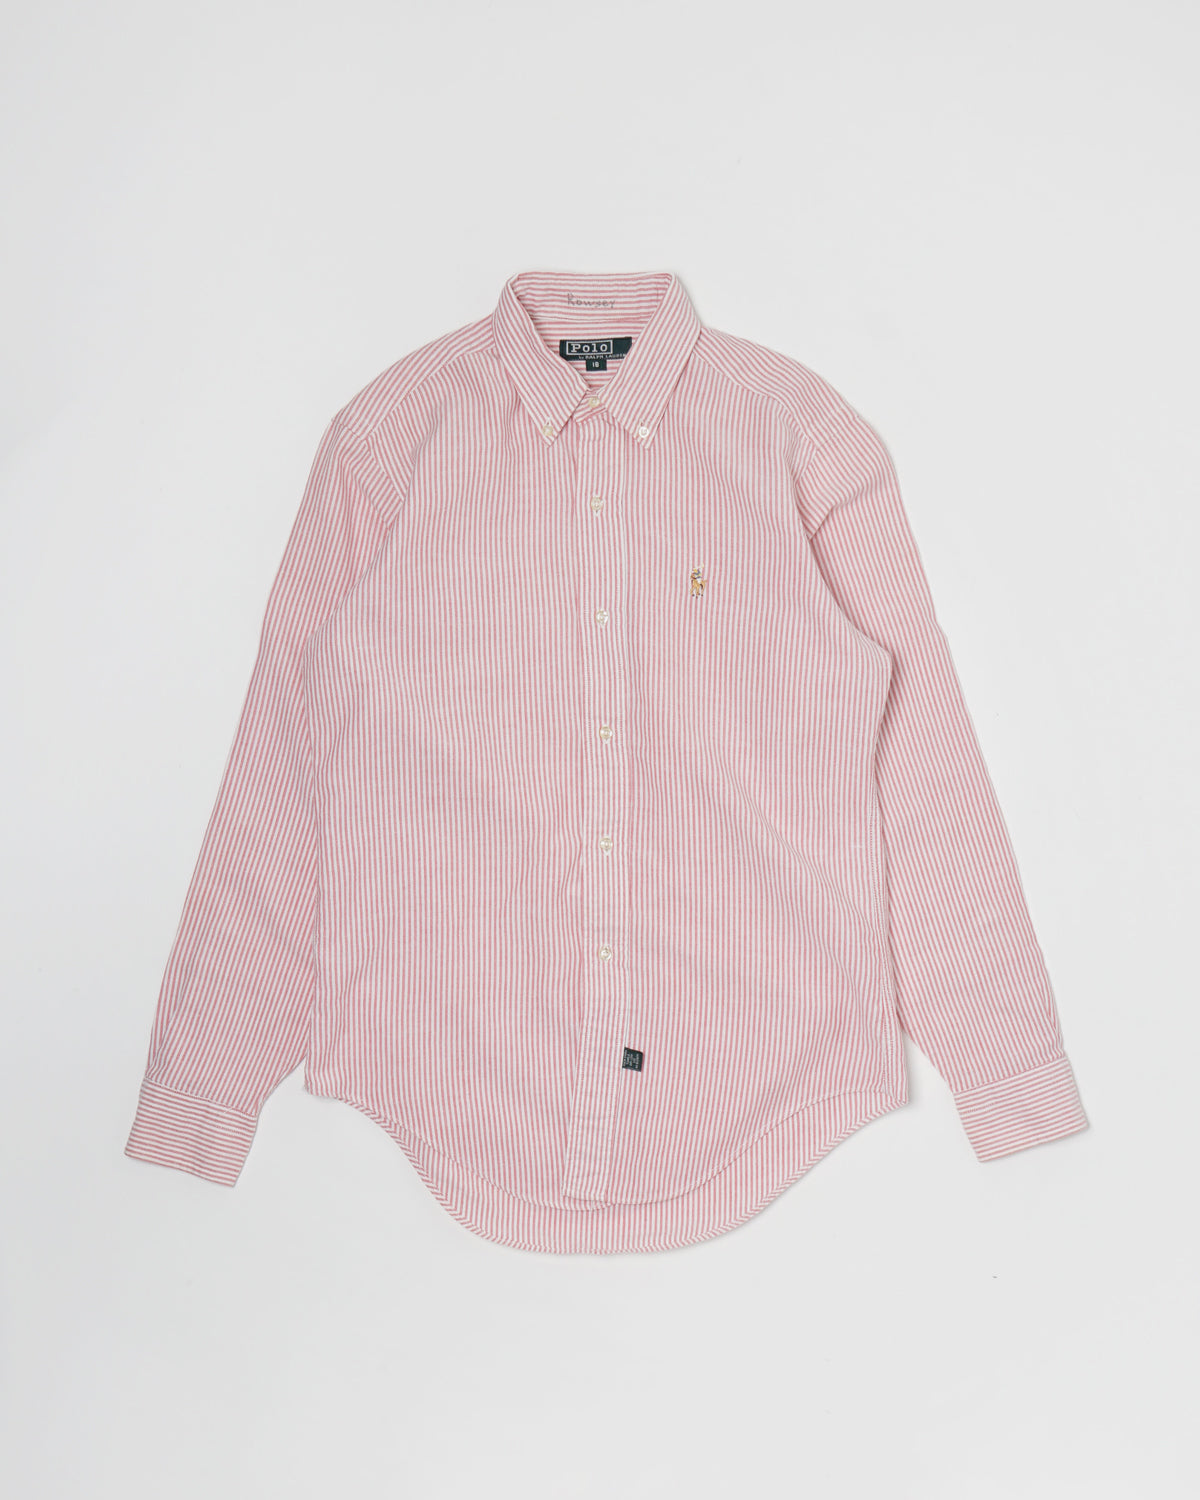 Oxford Shirts / Pink Stripe